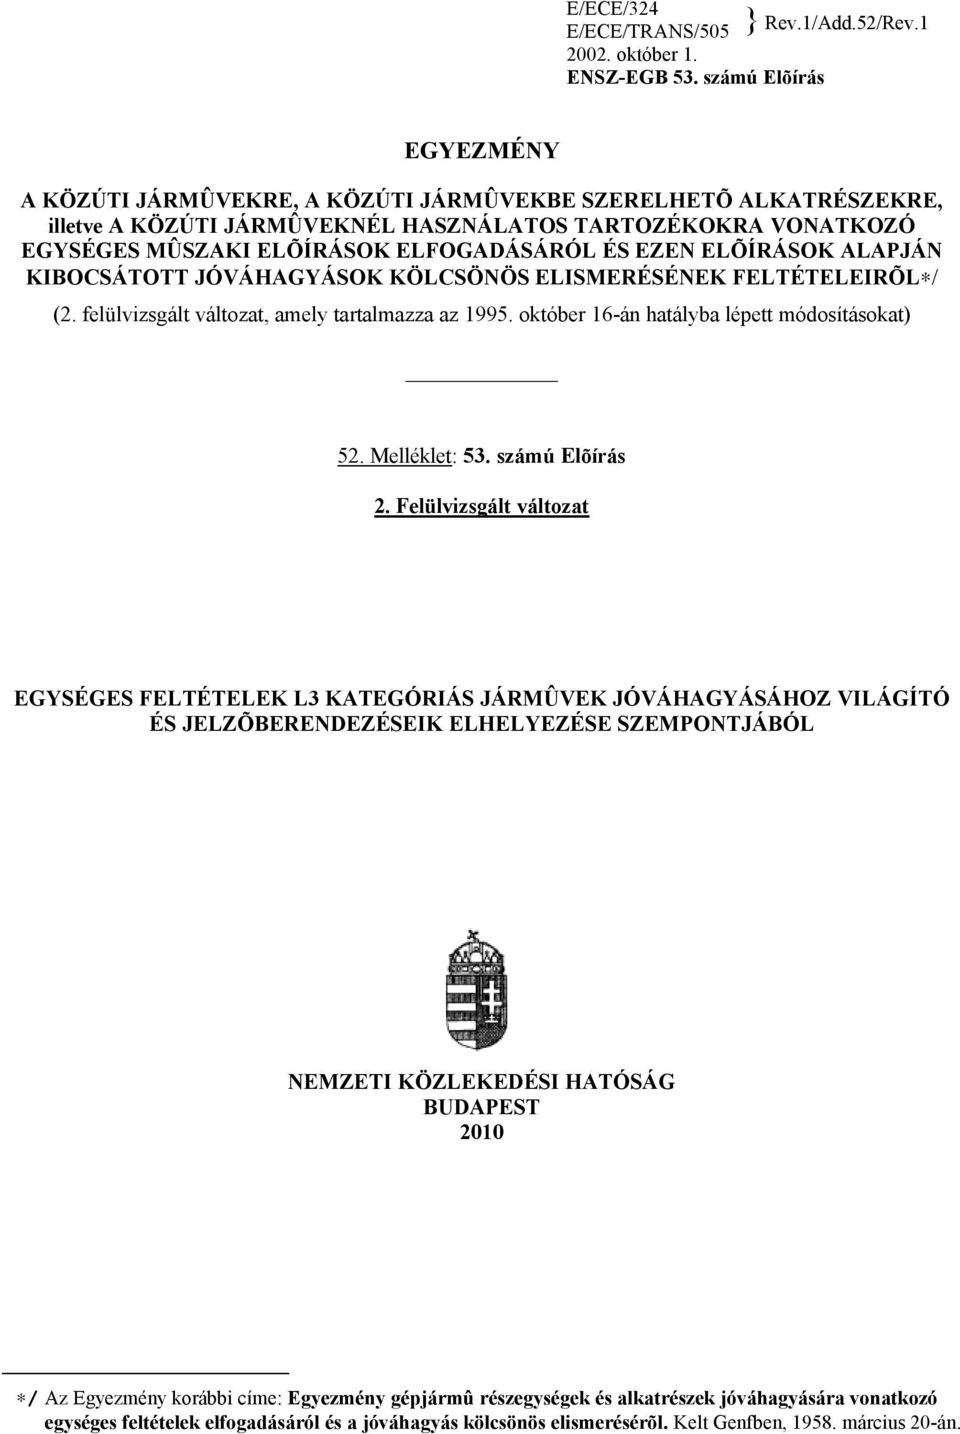 EZEN ELÕÍRÁSOK ALAPJÁN KIBOCSÁTOTT JÓVÁHAGYÁSOK KÖLCSÖNÖS ELISMERÉSÉNEK FELTÉTELEIRÕL / (2. felülvizsgált változat, amely tartalmazza az 1995. október 16-án hatályba lépett módosításokat) 52.